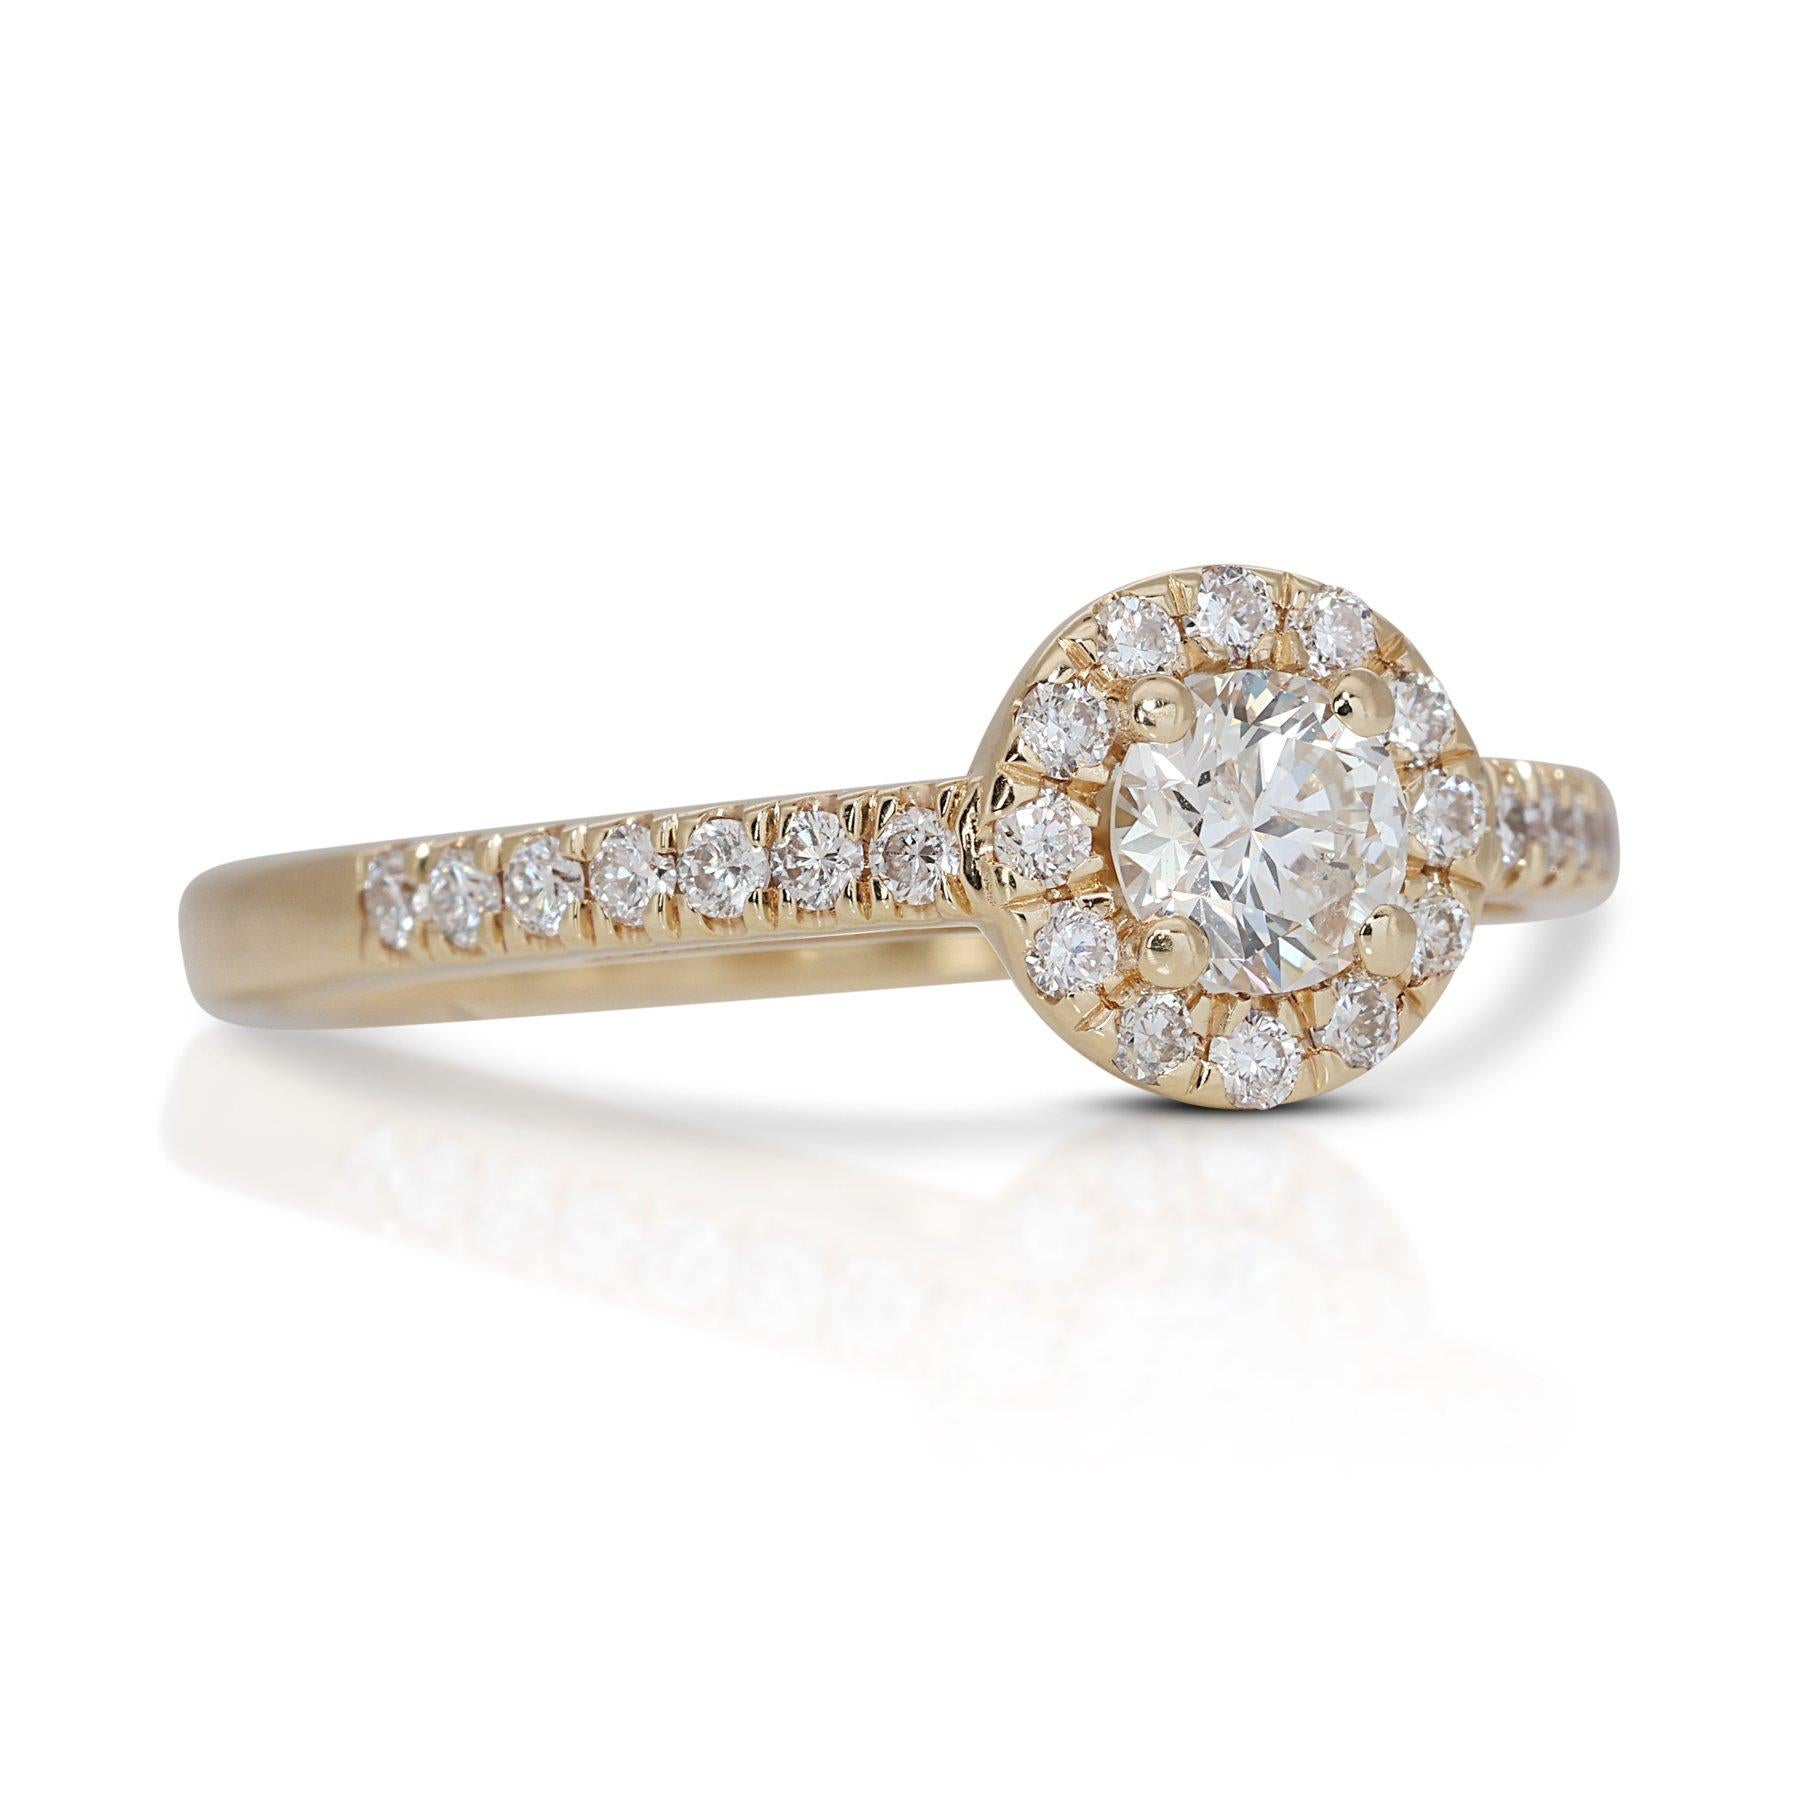 Taille ronde Enchanteresse bague halo de diamants 0,98 carat en or jaune 18 carats, certifiée GIA